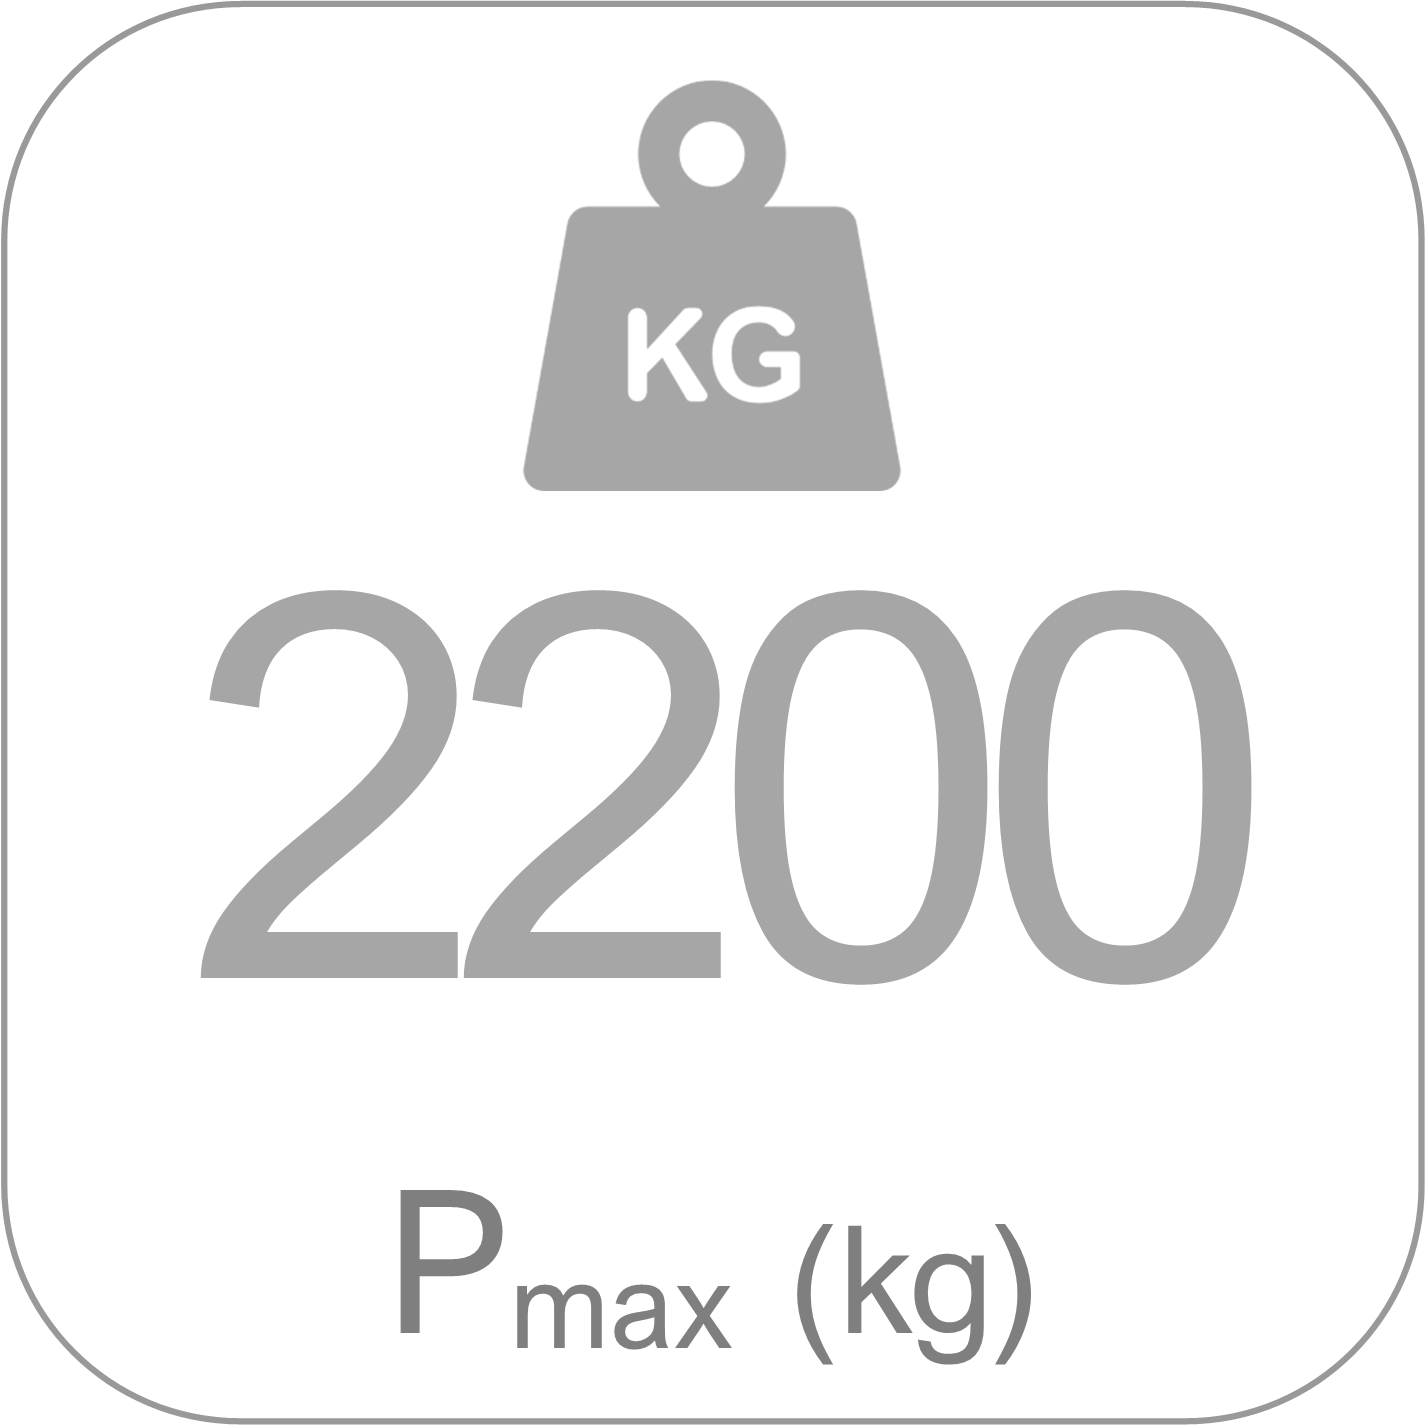 Puntales Clase D - Pmax 2200